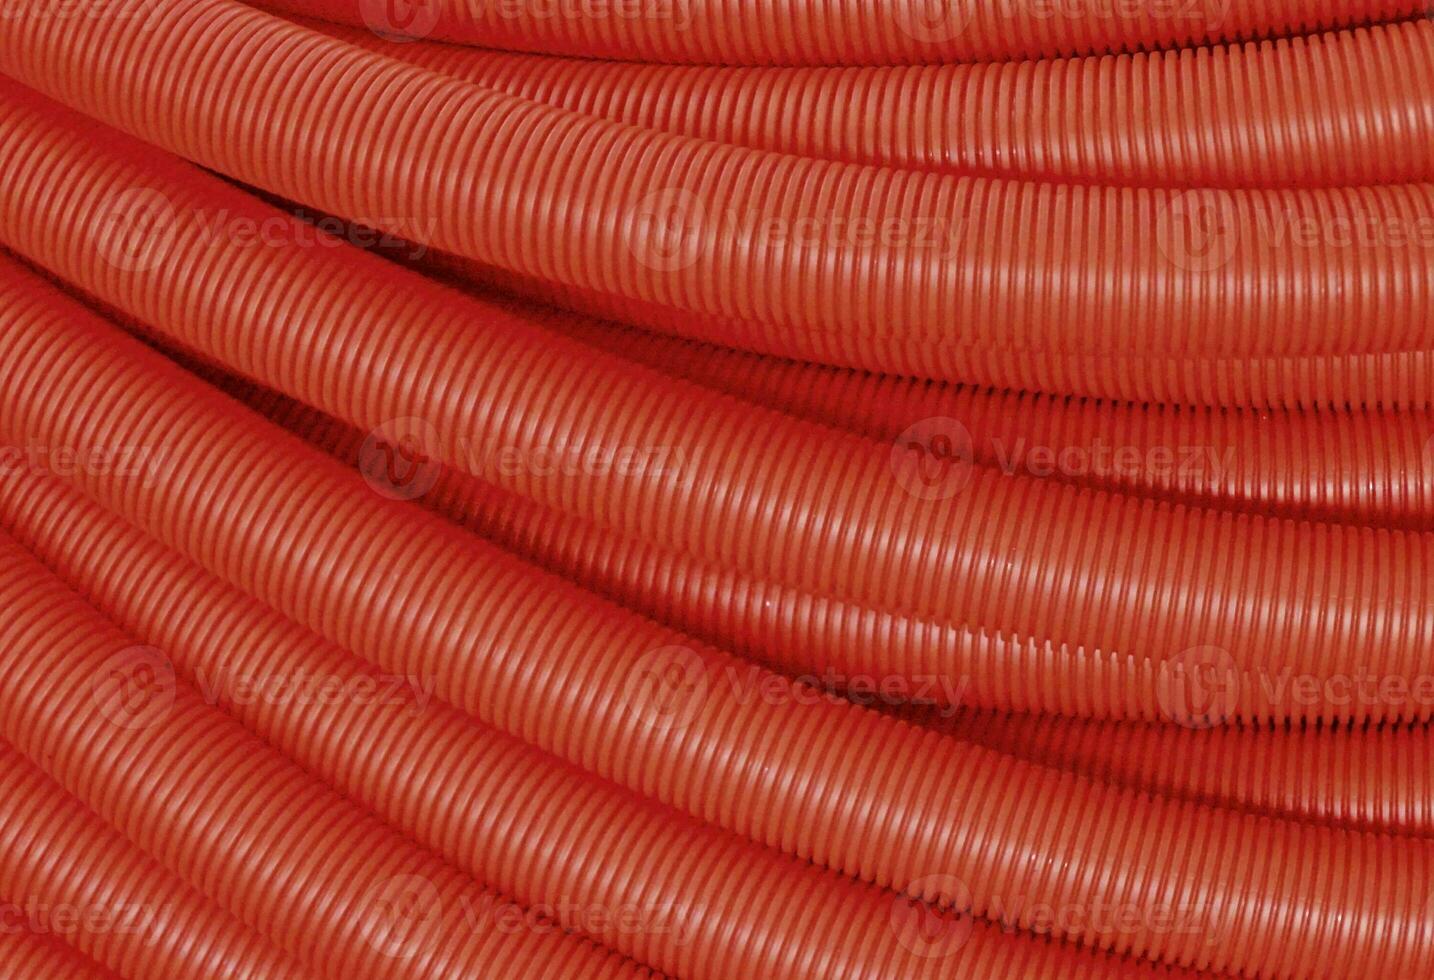 a close up of a red hose photo